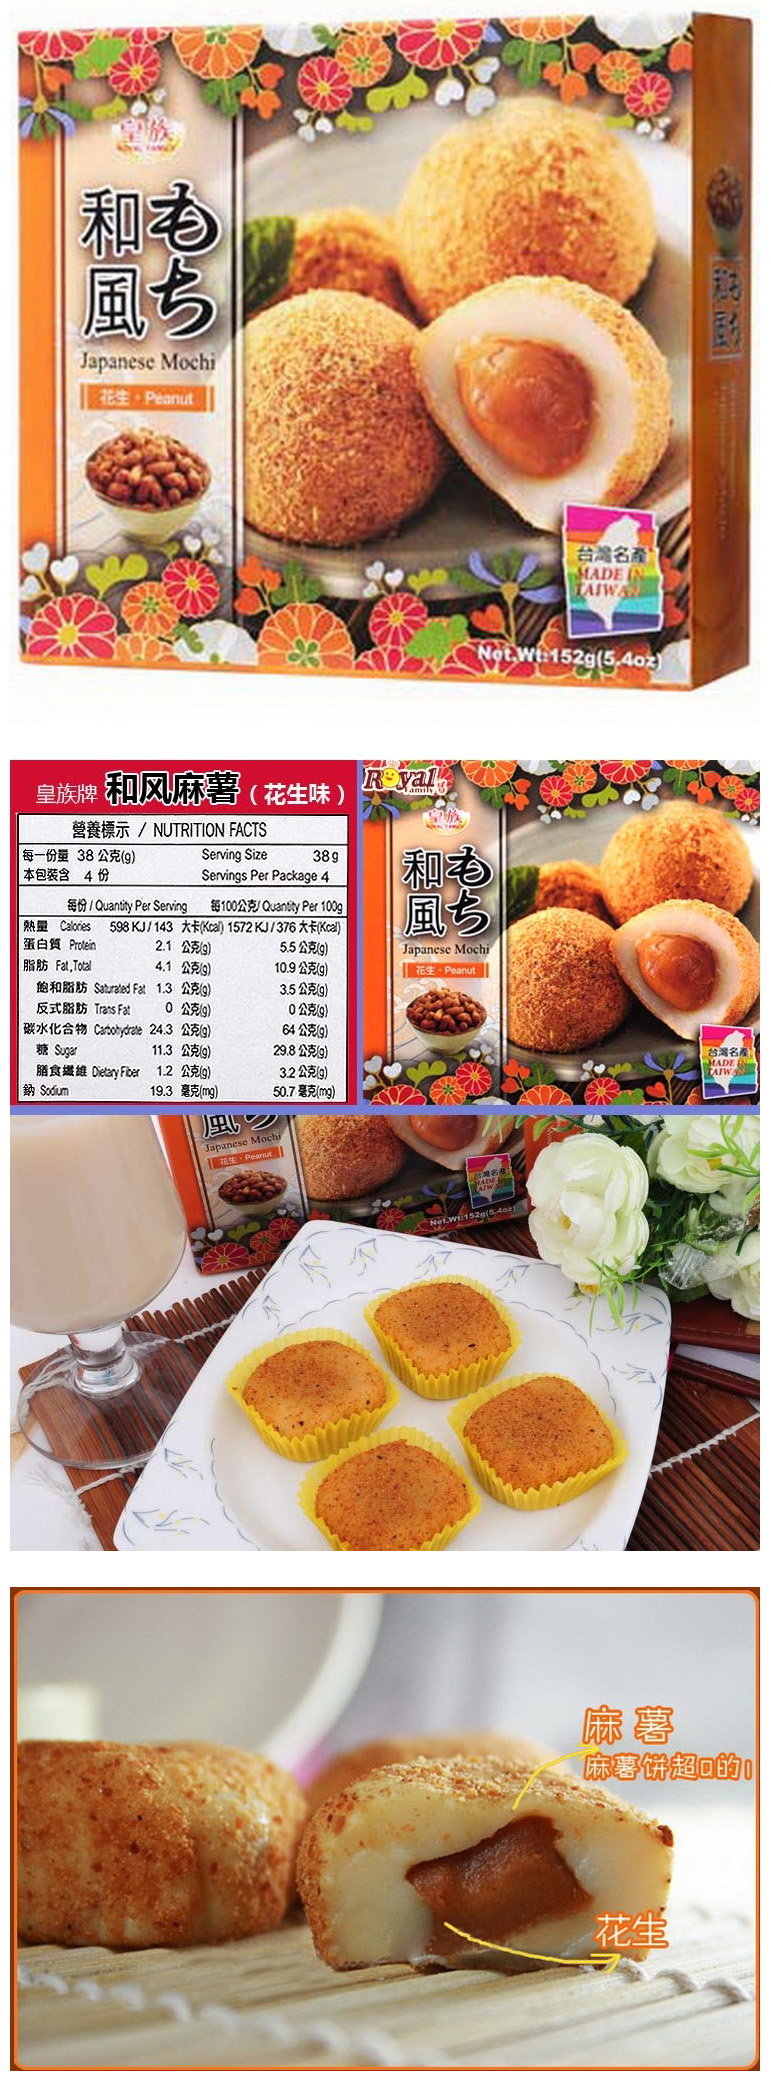 【马来西亚直邮】台湾 ROYAL FAMILY 皇族 和风麻薯花生味 152g